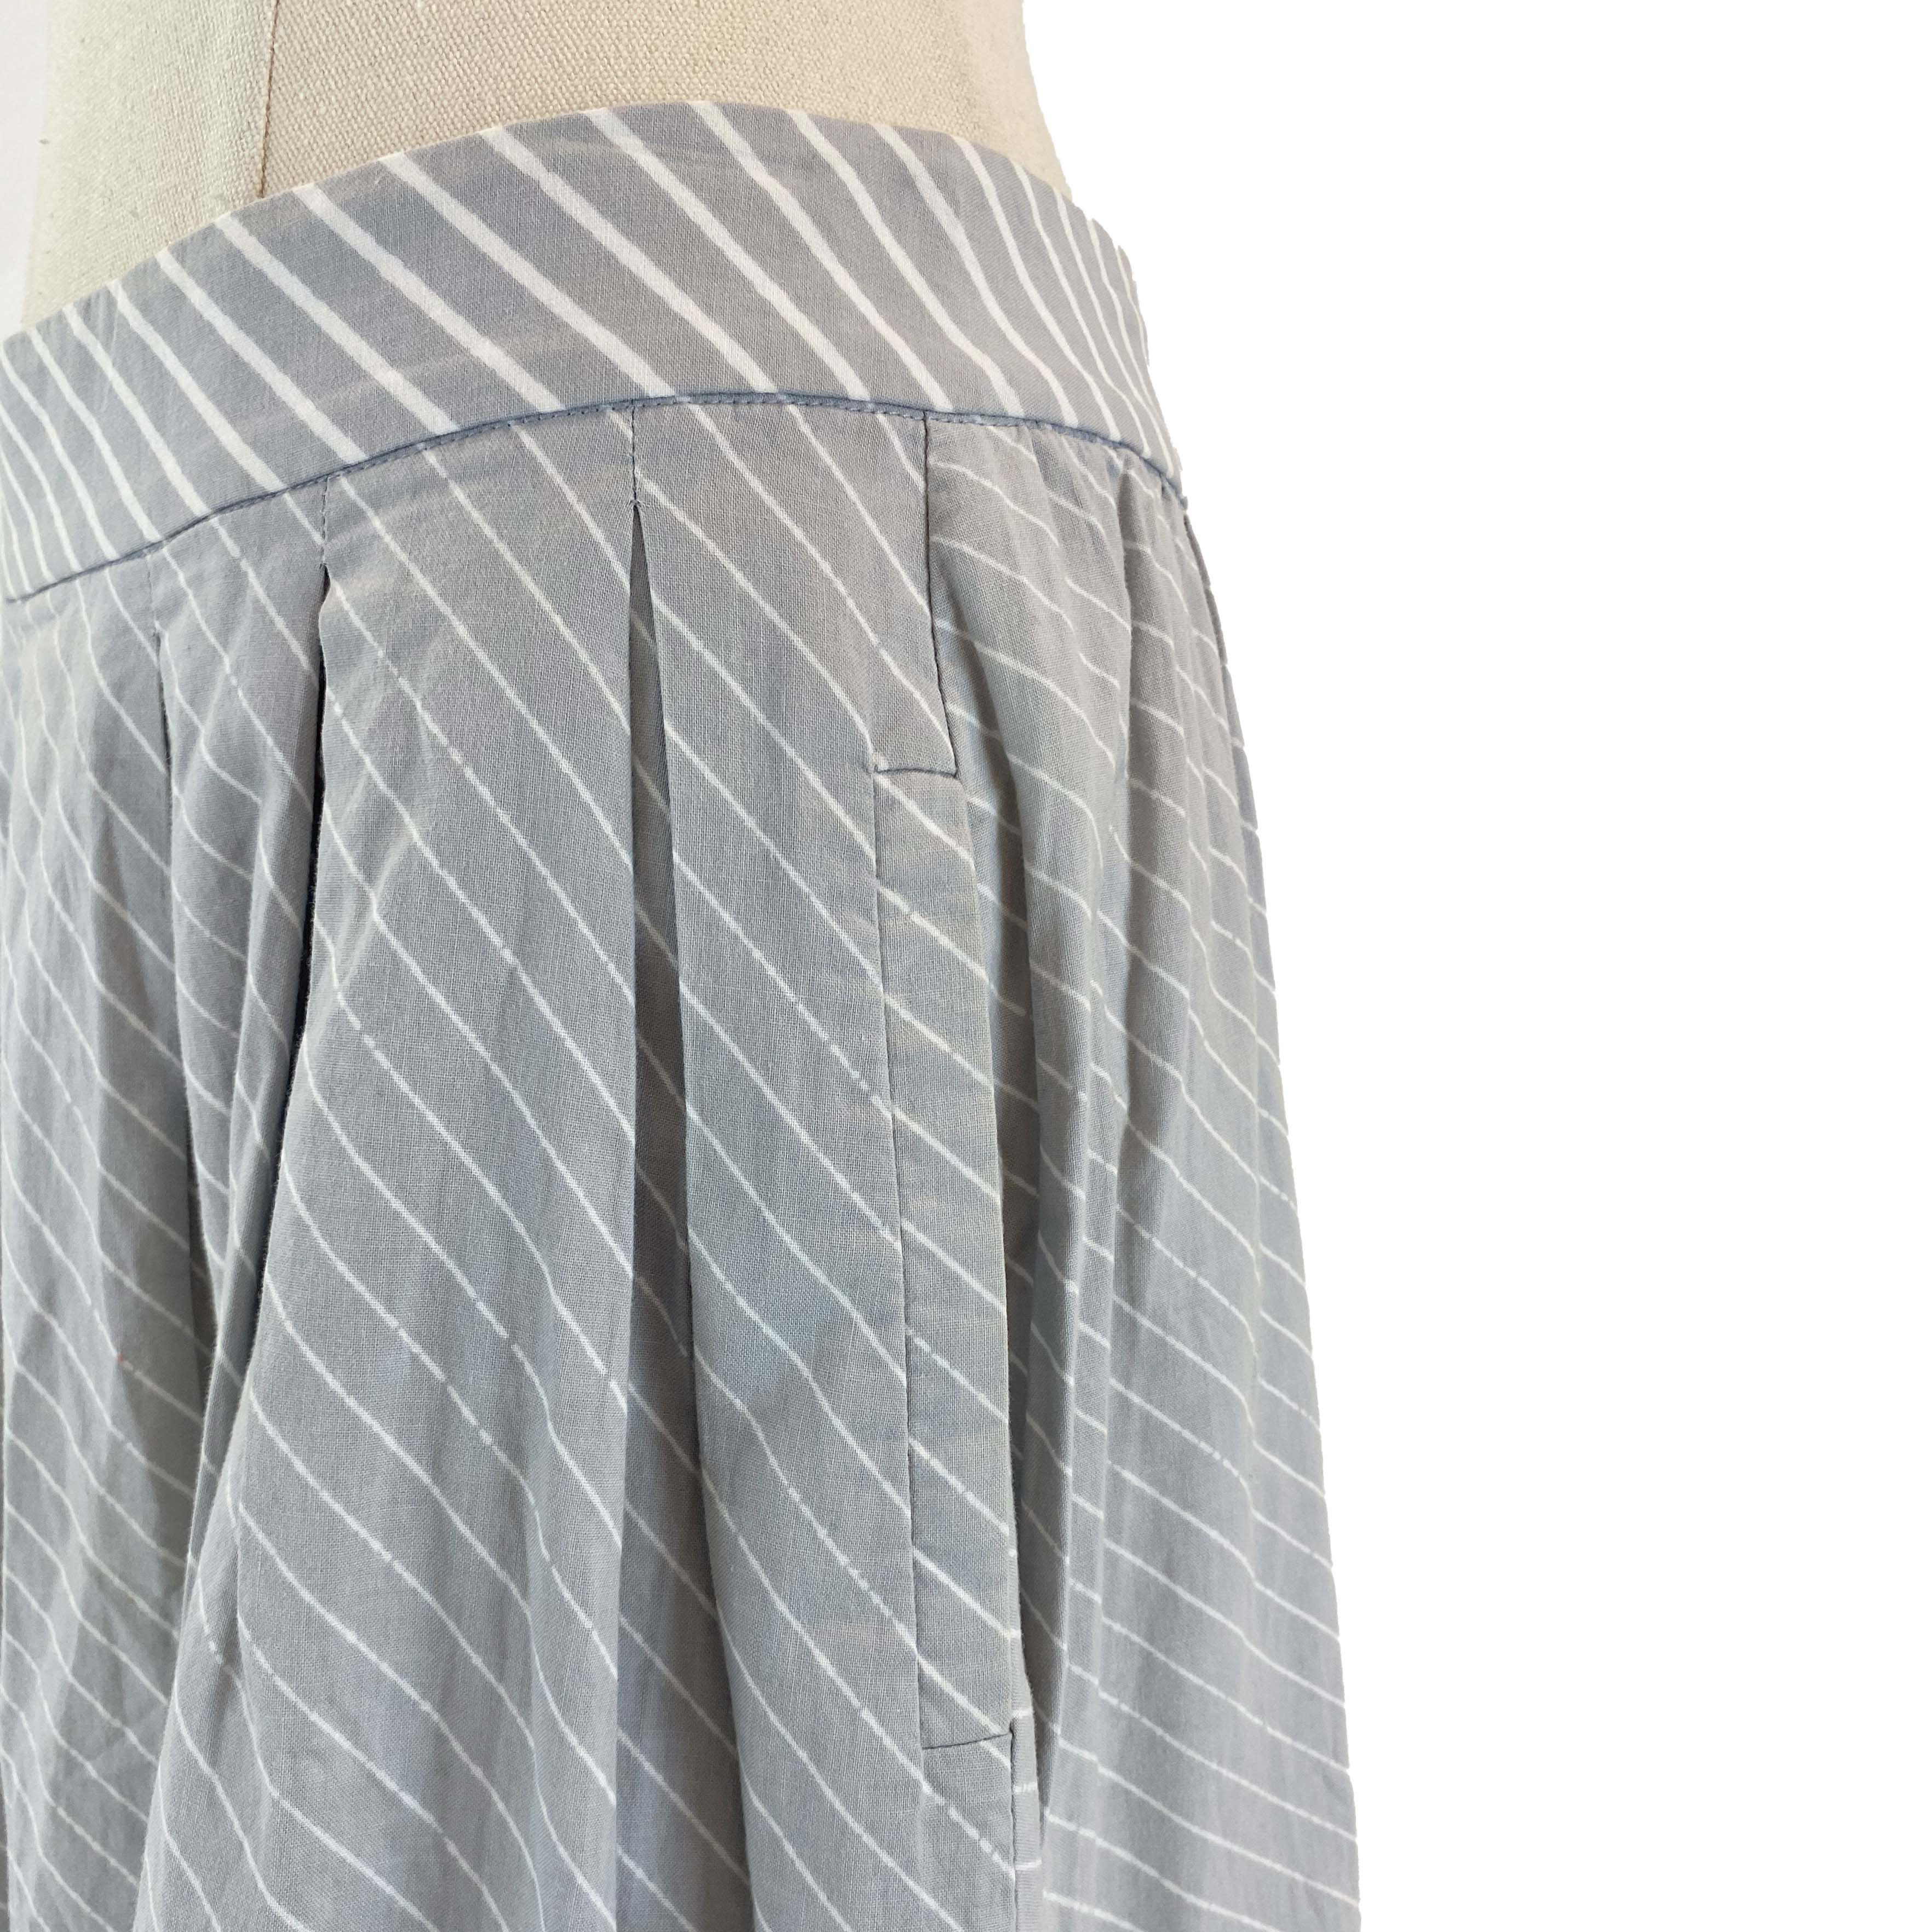 KLOKE Light Gray Striped Skirt